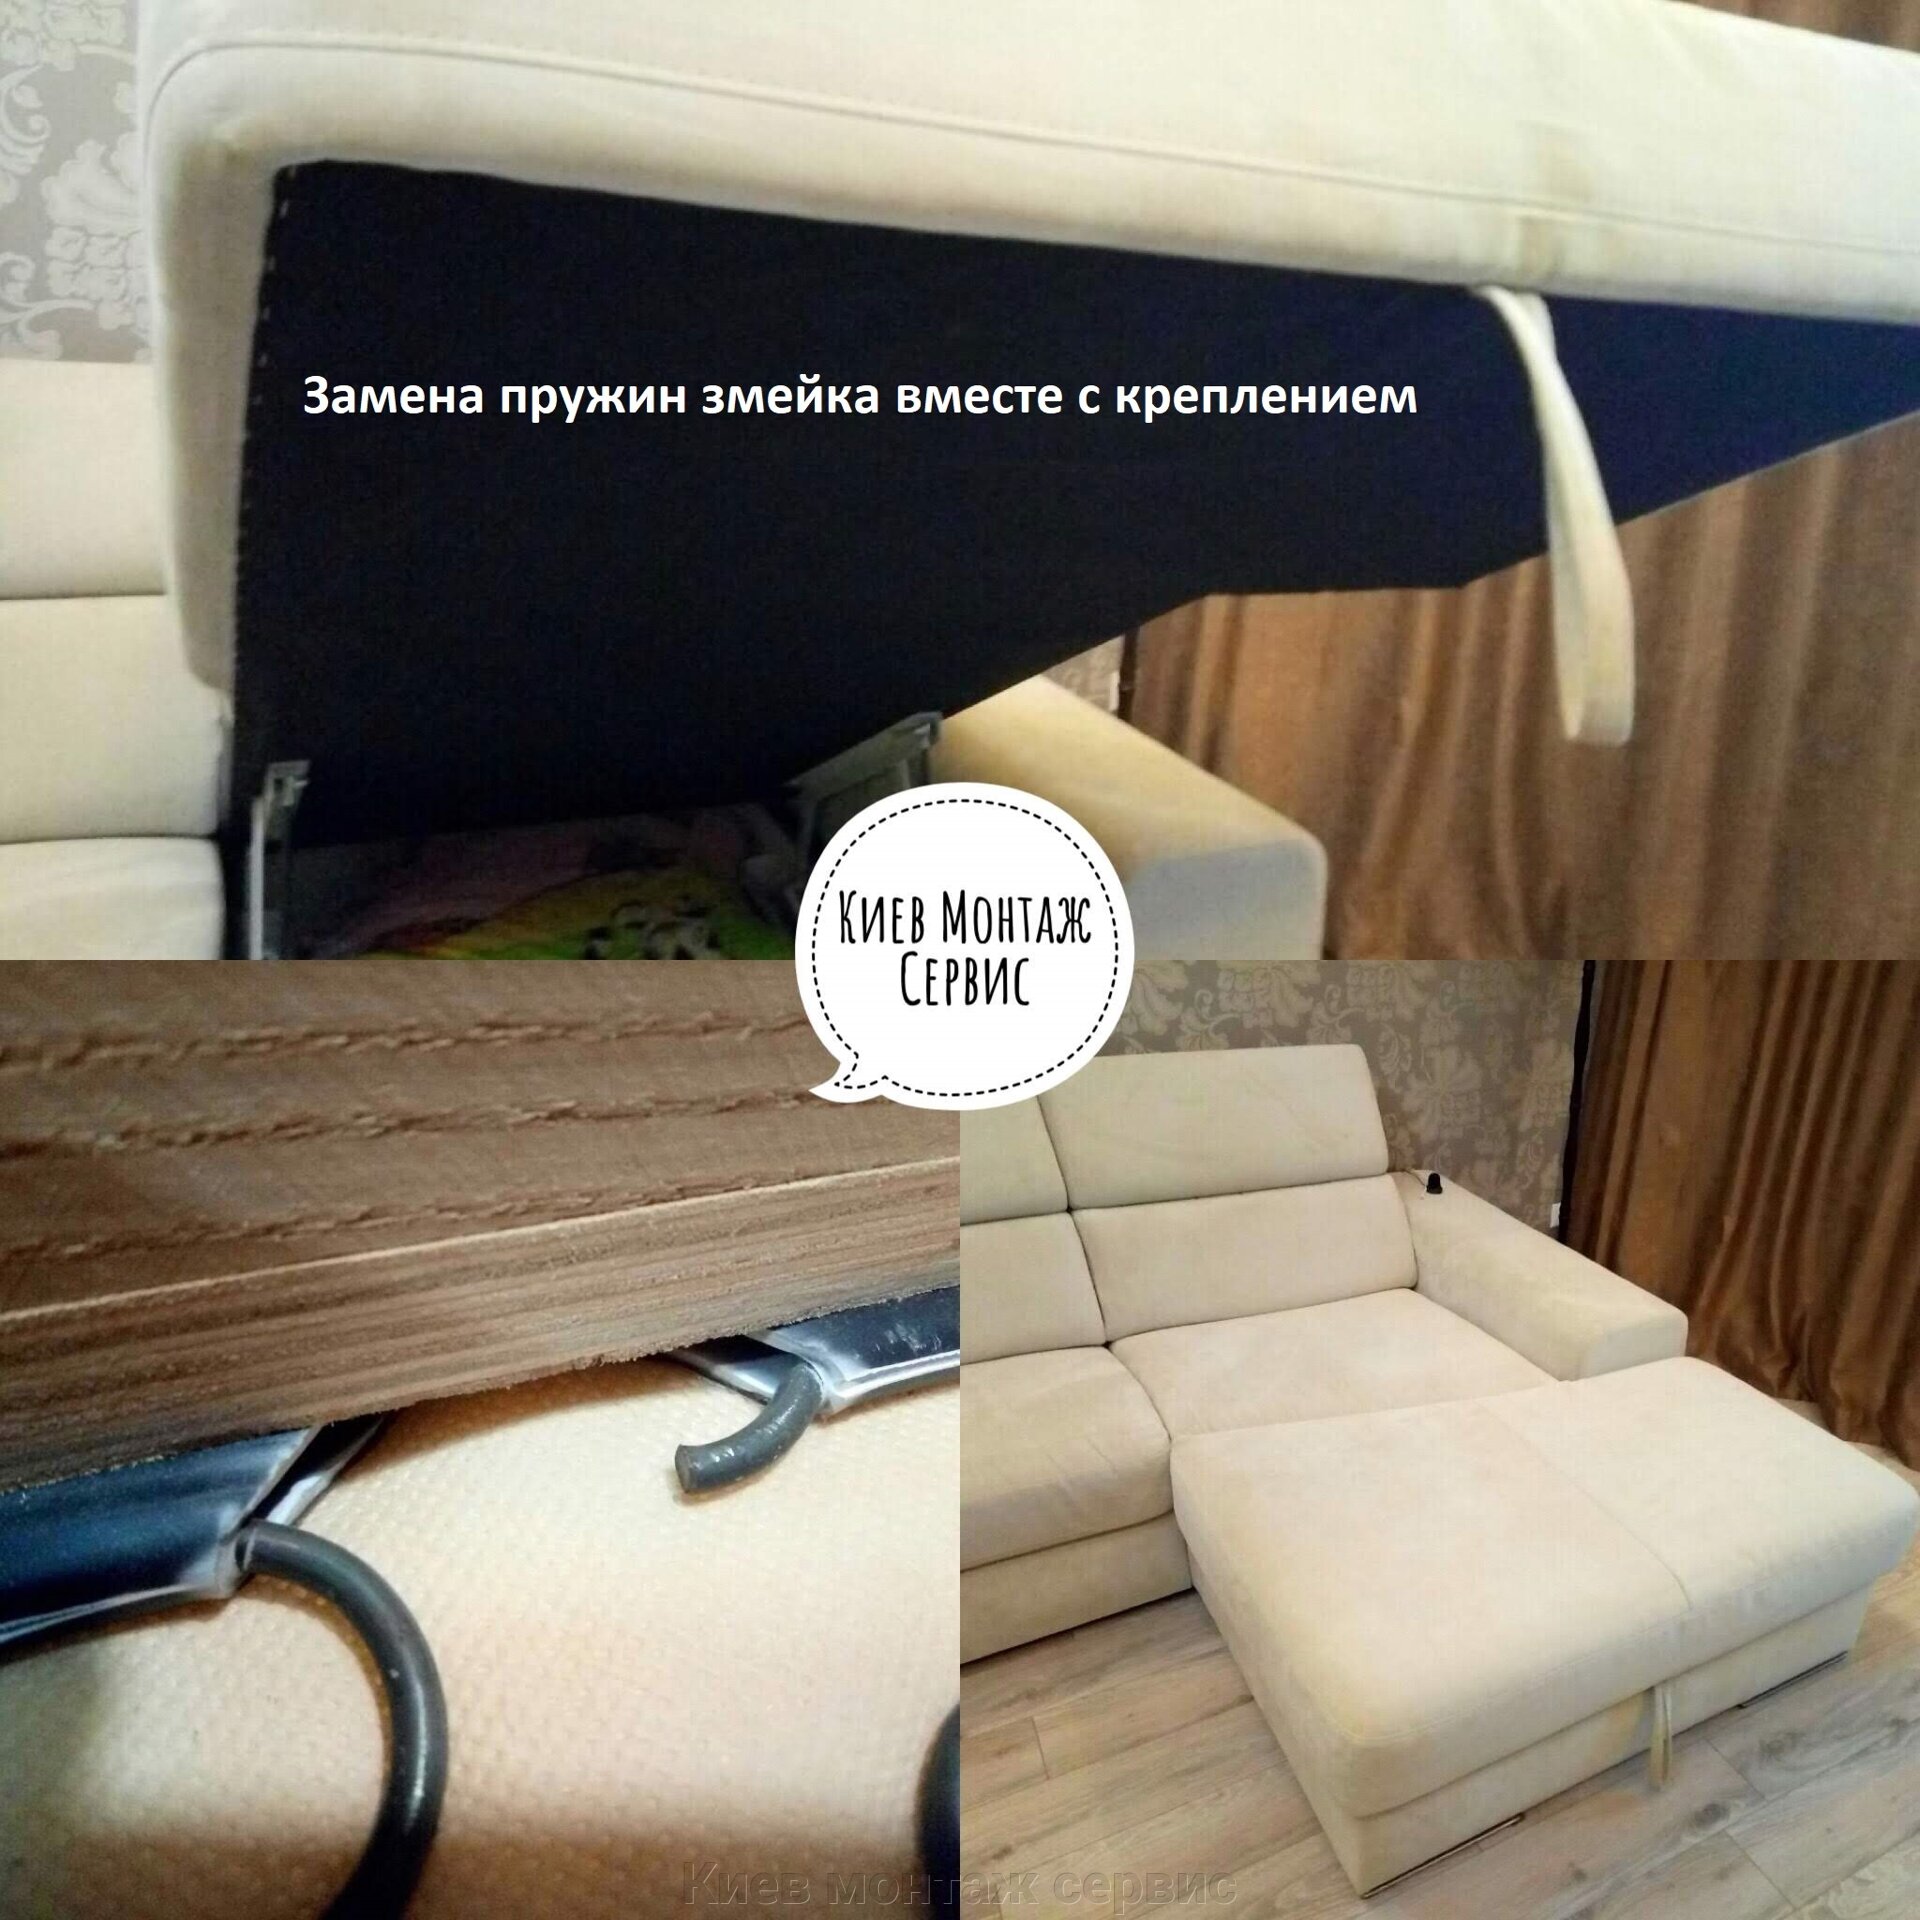 Ремонт и перетяжка дивана в Киеве, Бровары